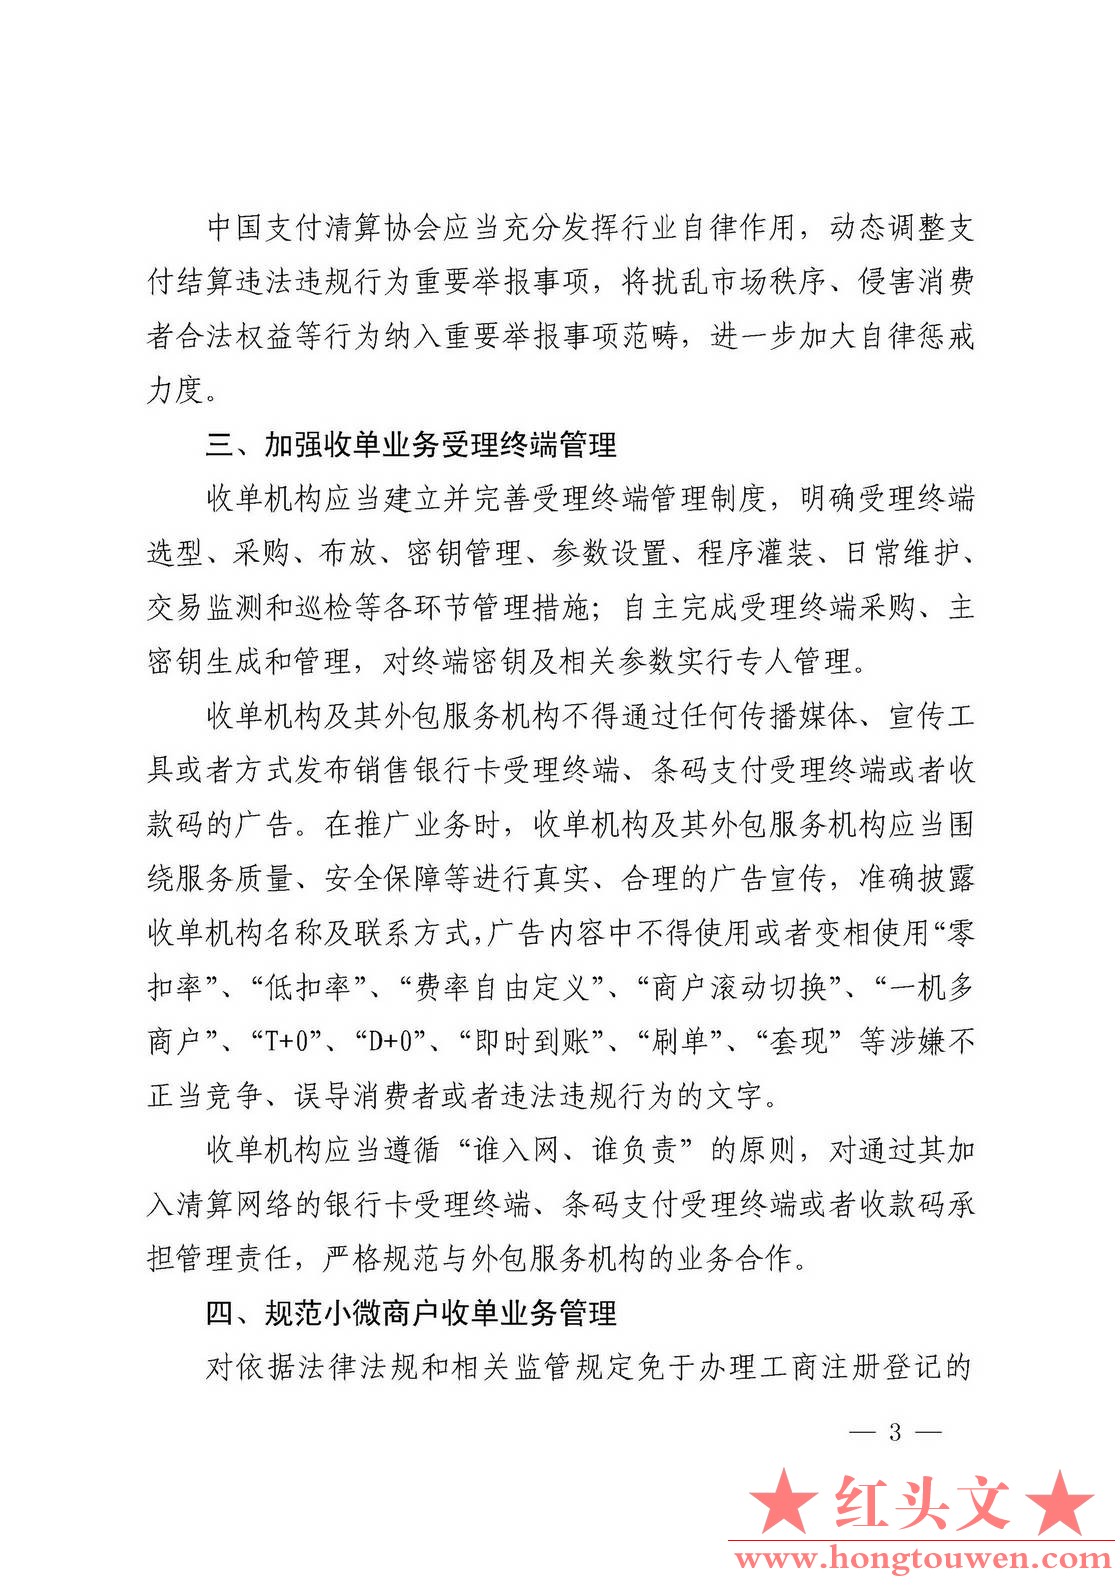 银发[2017]281号-中国人民银行关于规范支付创新业务的通知_页面_3.jpg